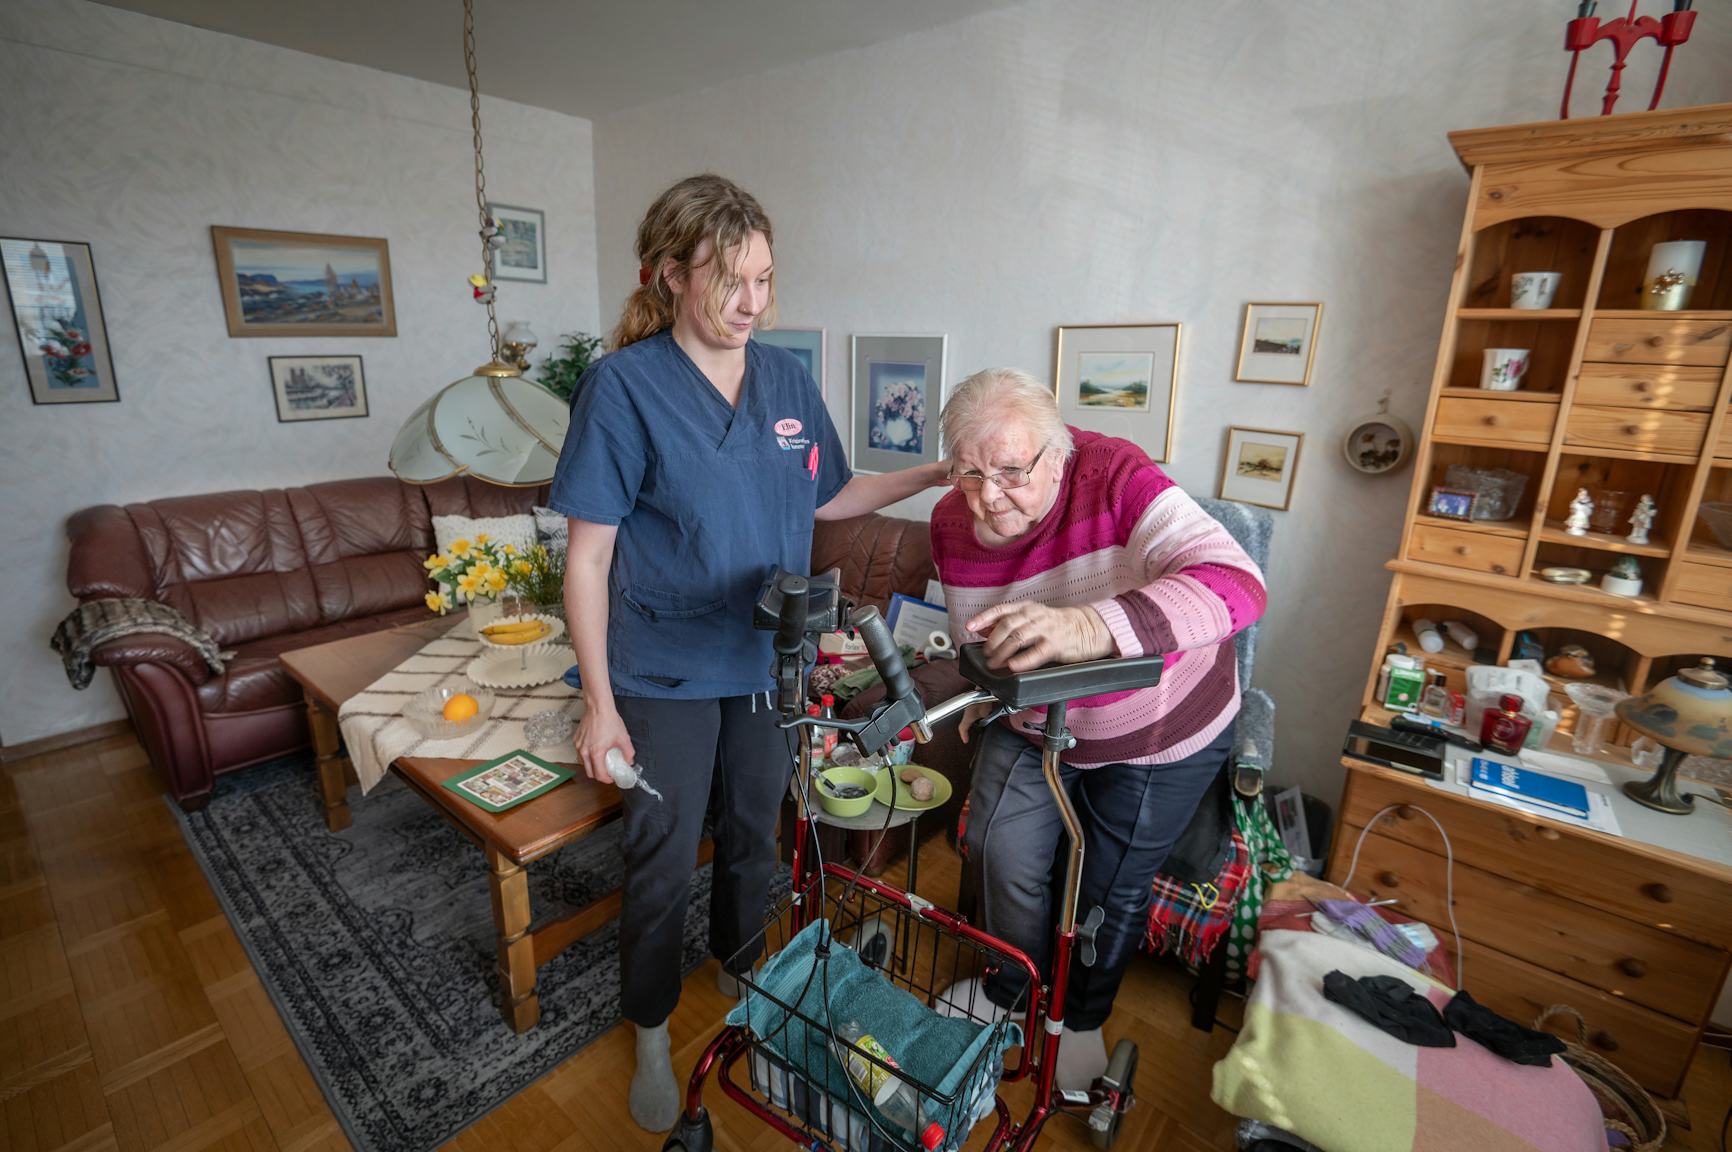 En vårdpersonal hjälper en äldre dam med hjälp av en rollator i ett mysigt vardagsrum.